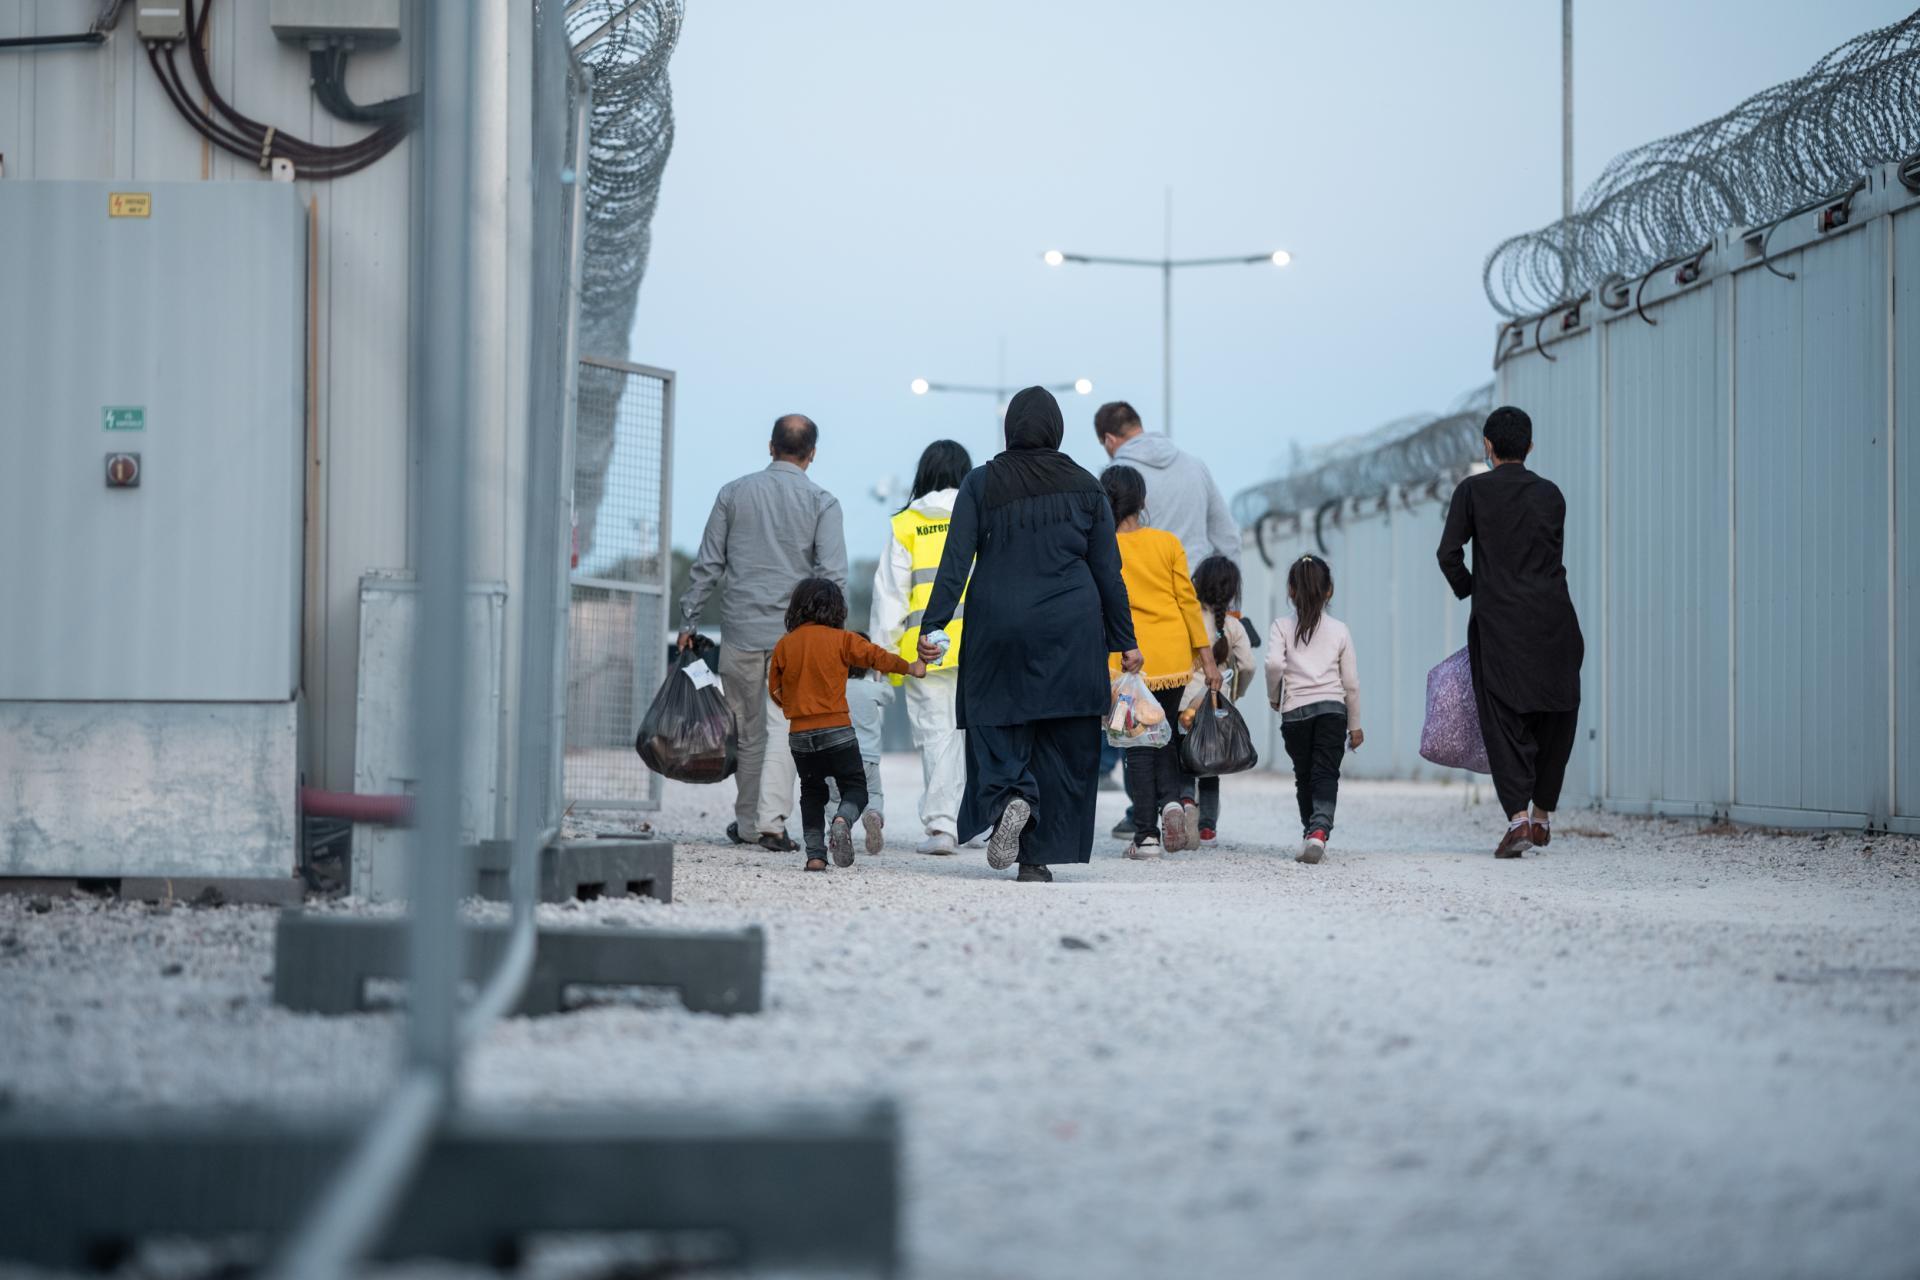 Tizenötezer eurós kártérítést fizet a magyar állam egy afgán családnak